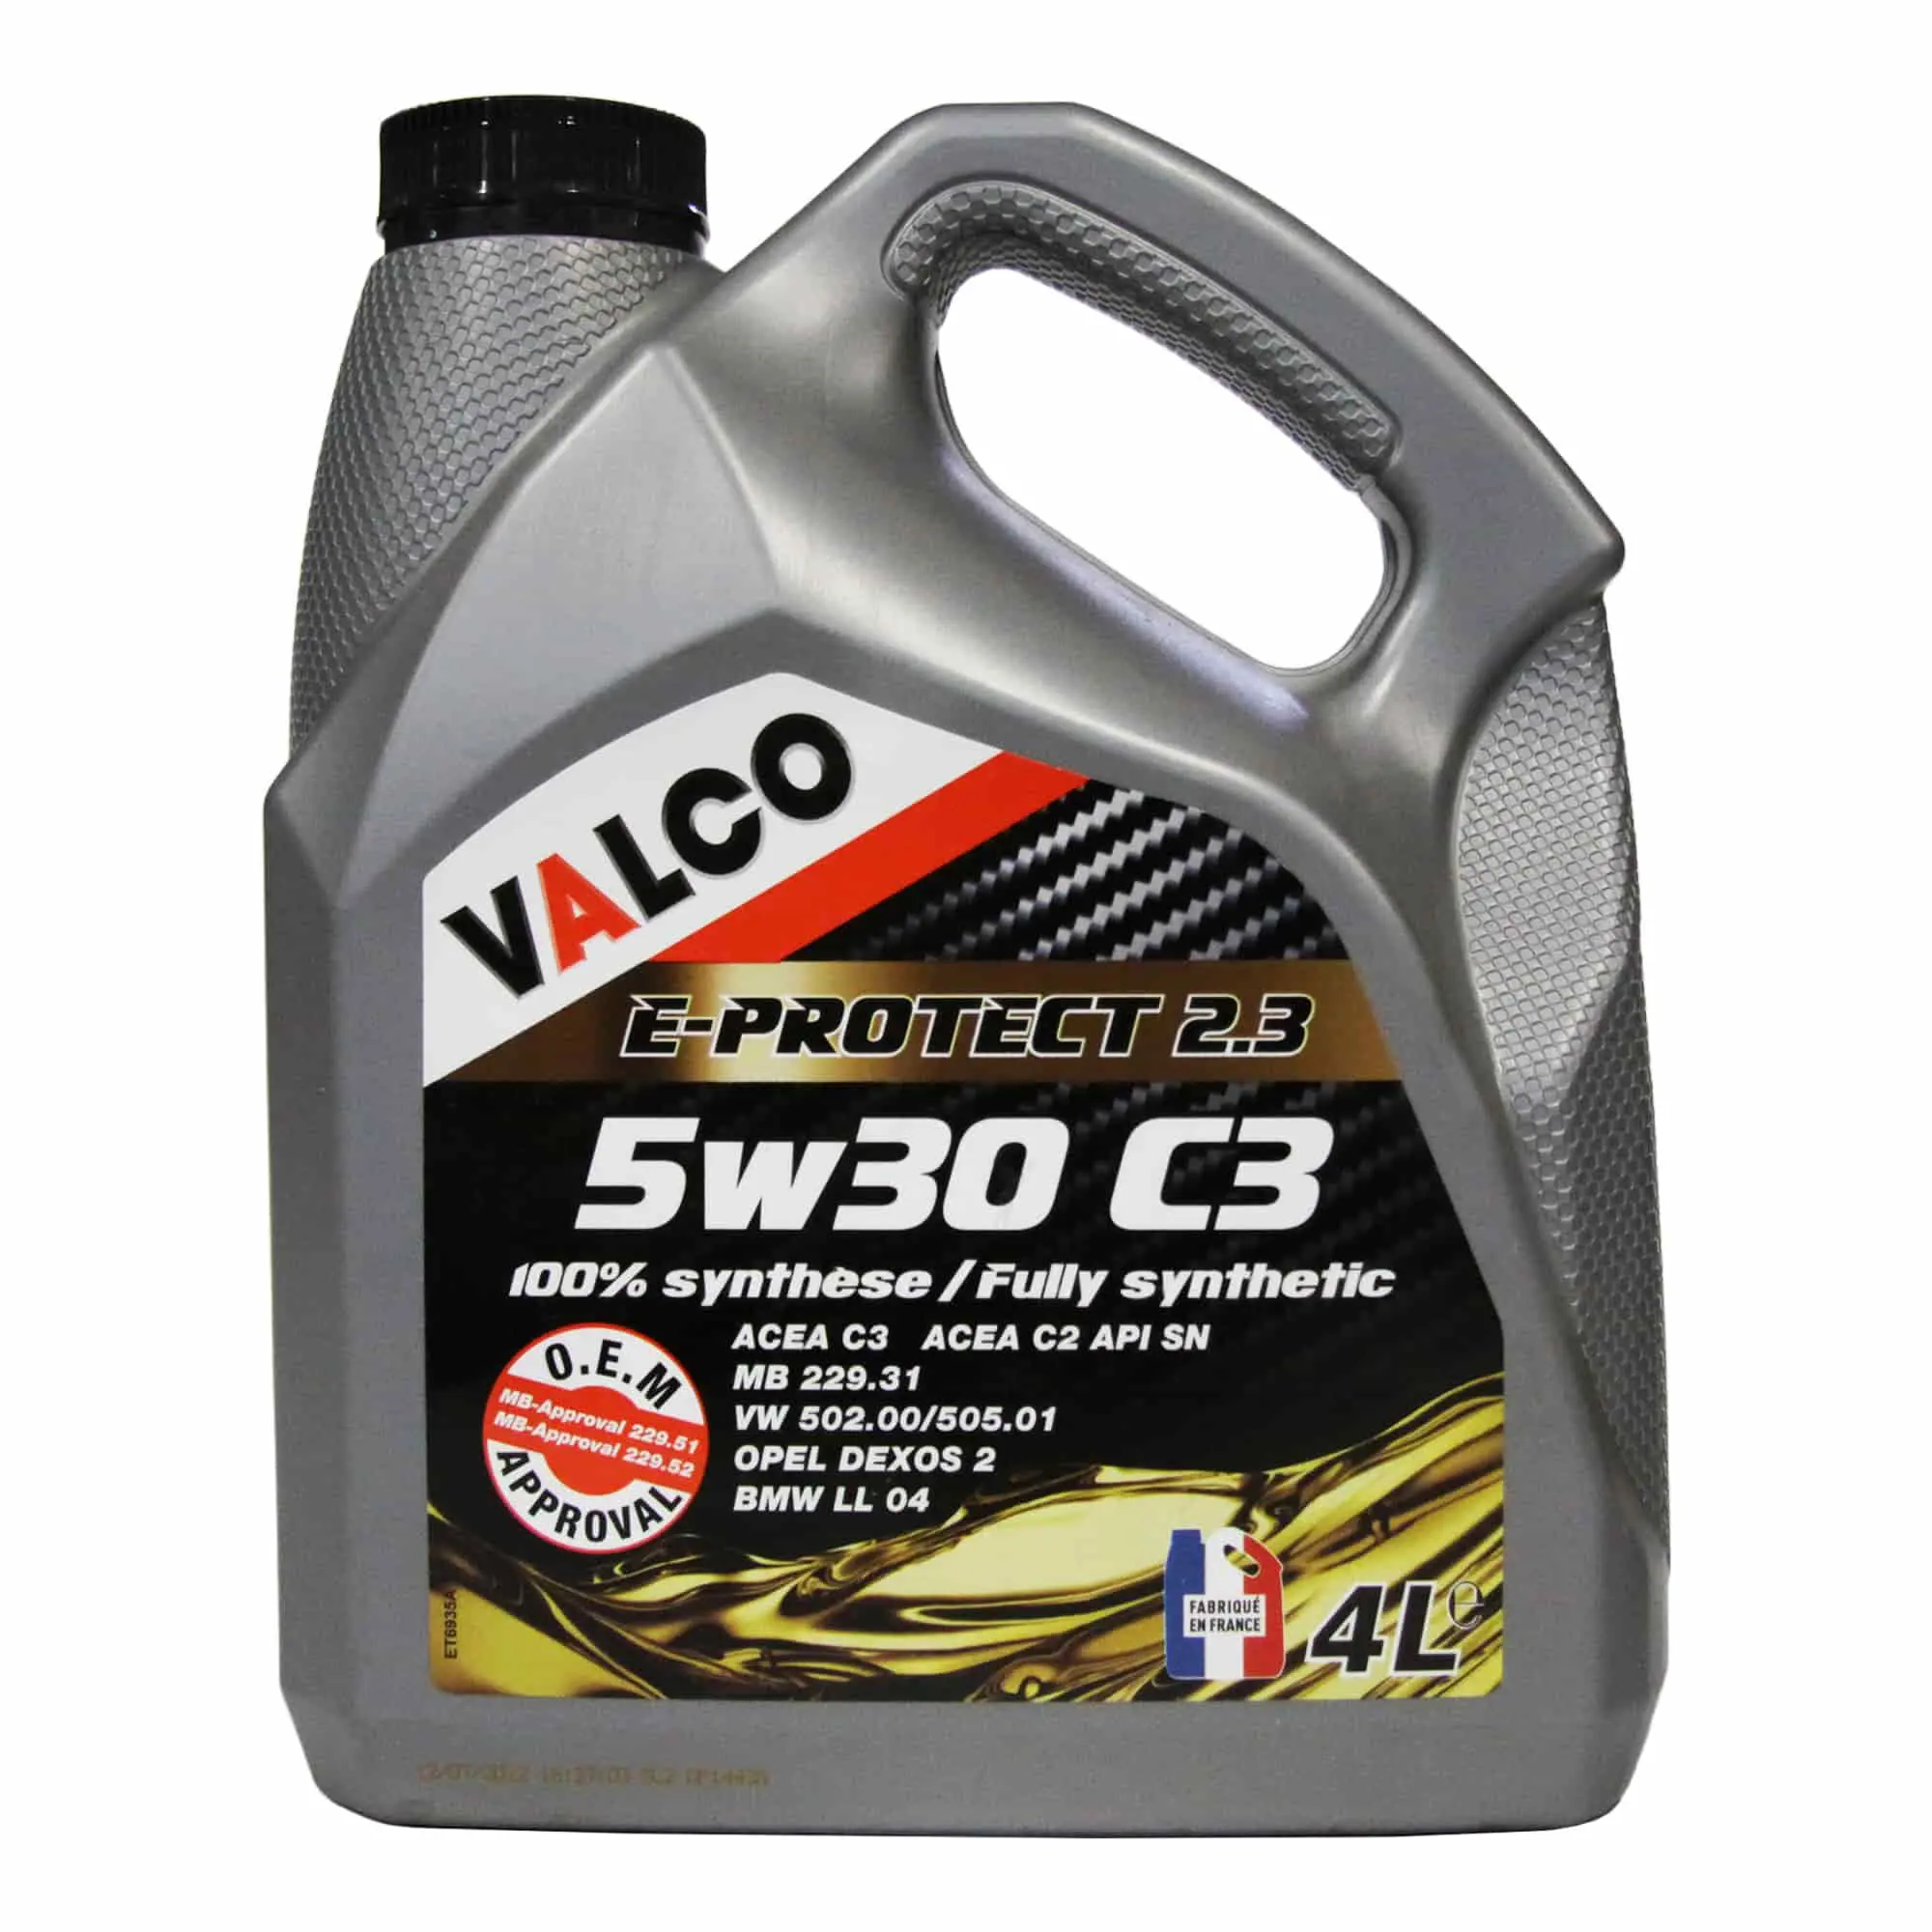 Моторна олива Valco E-Protect 2.3 5W-30 C3 (PF006867)